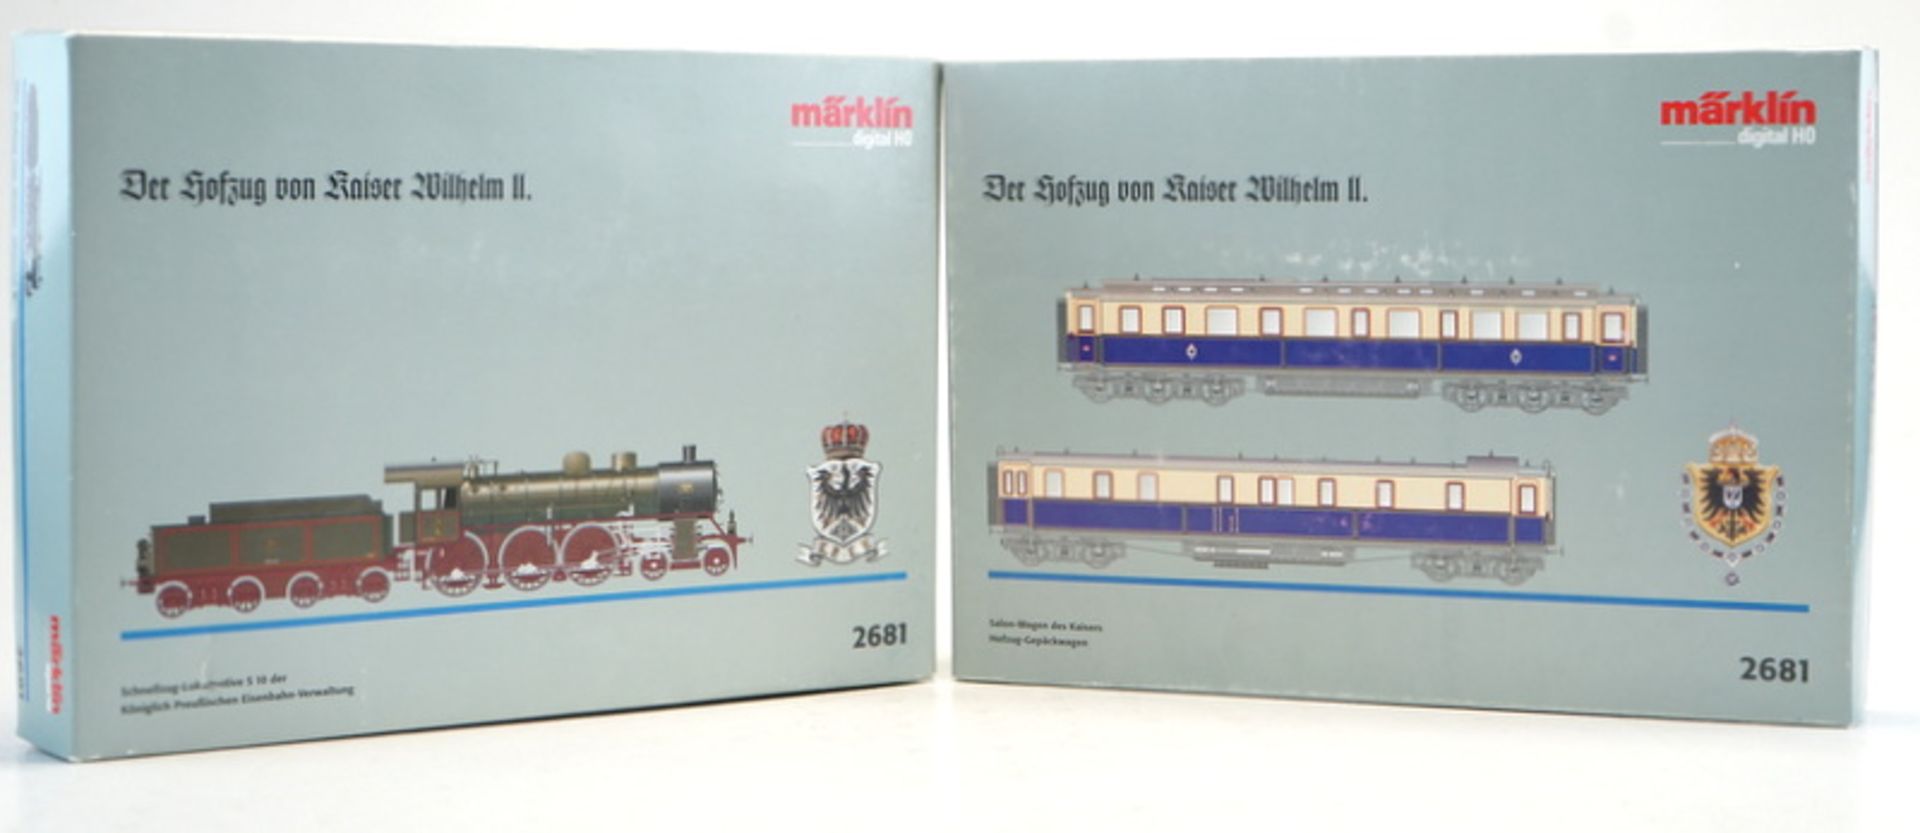 Märklin ab 1954, Gebr. Märklin & Cie., G.m.b.H. Göppingen: 2 Zug-Sets vom Hofzug Kaiser Wilhelm II., - Image 4 of 4